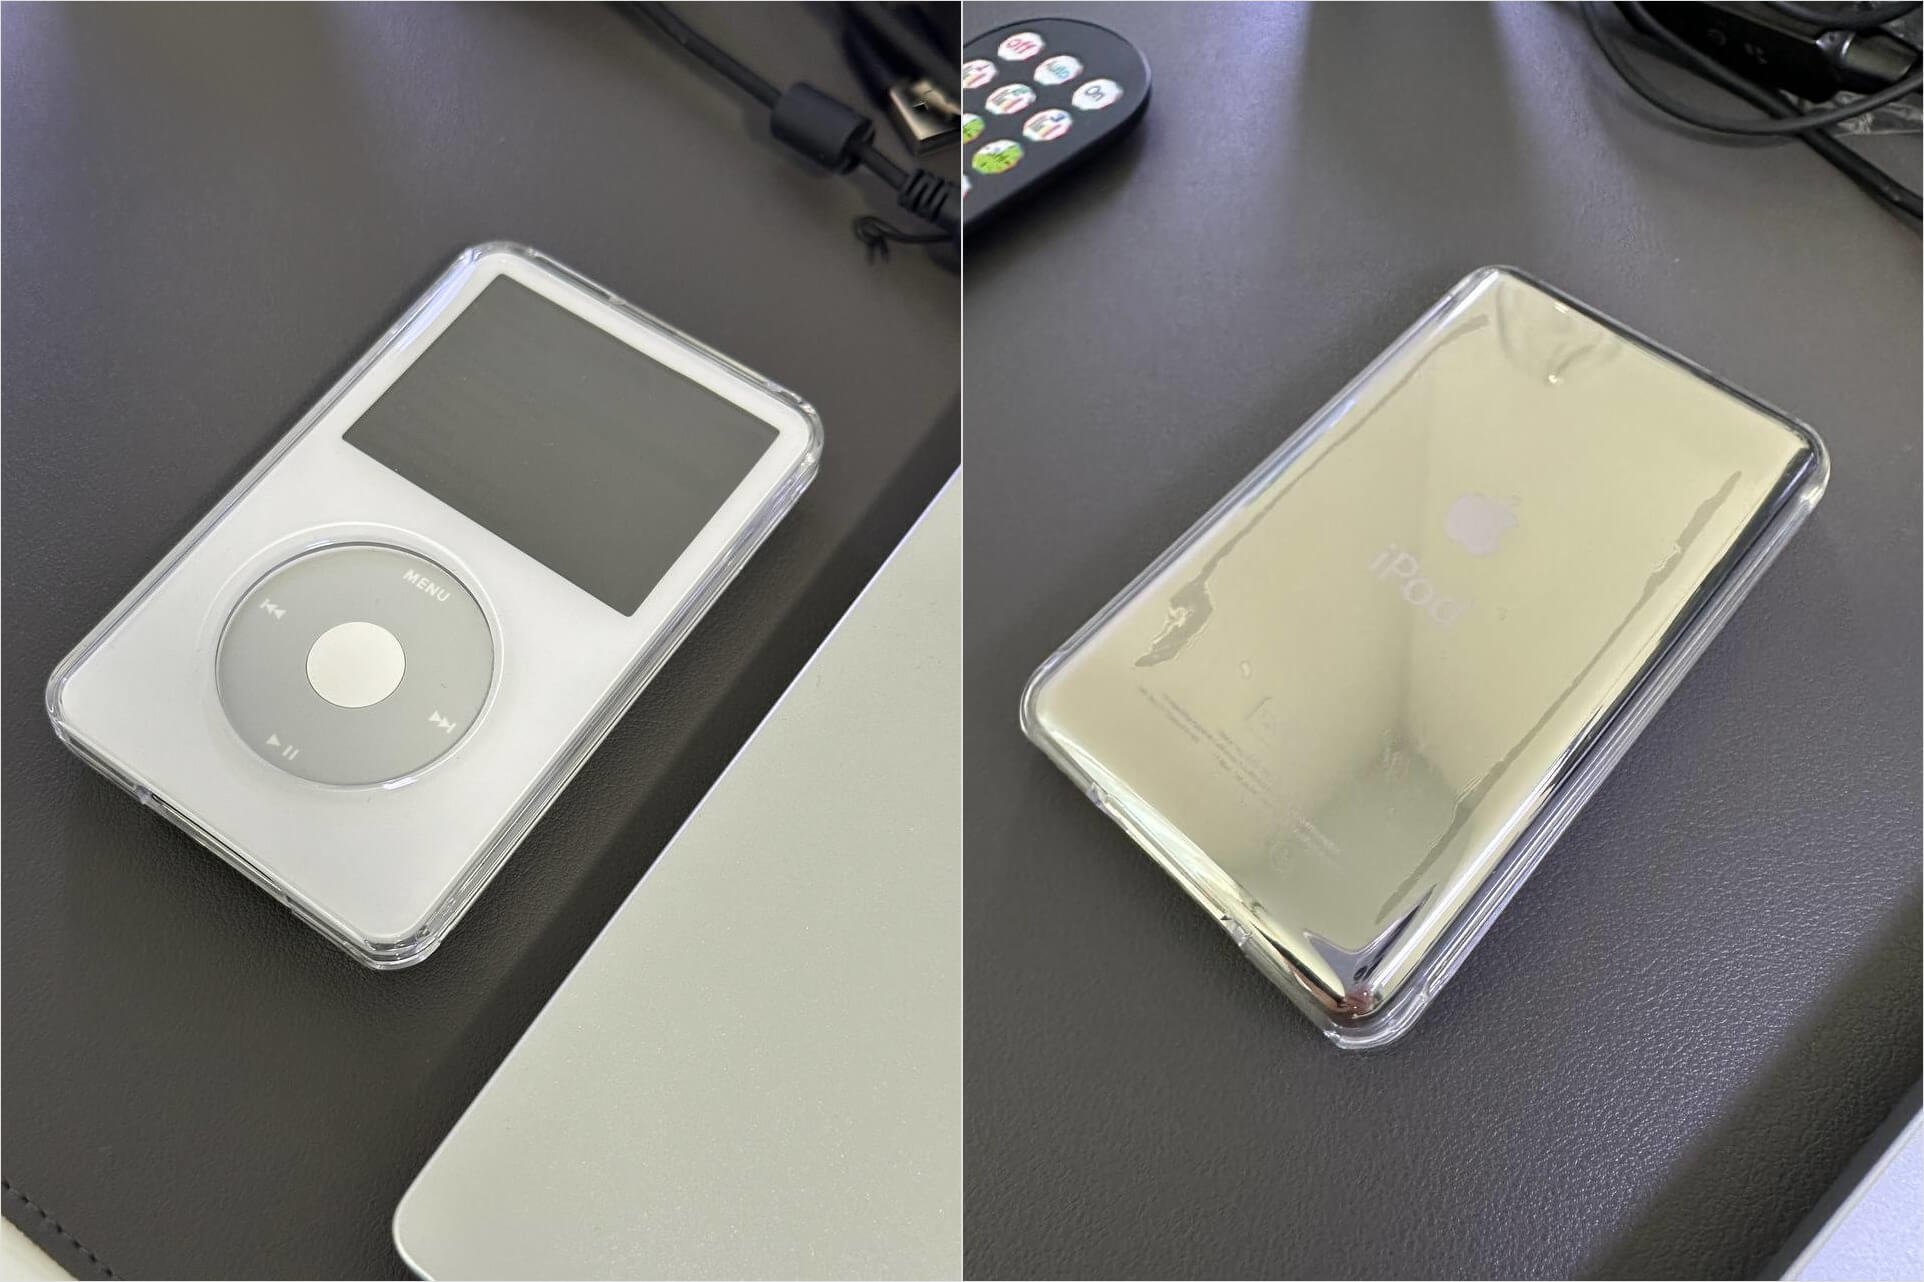 Нашел на Авито iPod Classic с SSD на 120 Гб и батареей 2000 мА*ч. Вернул свой 2007 по цене дешевого Андроида